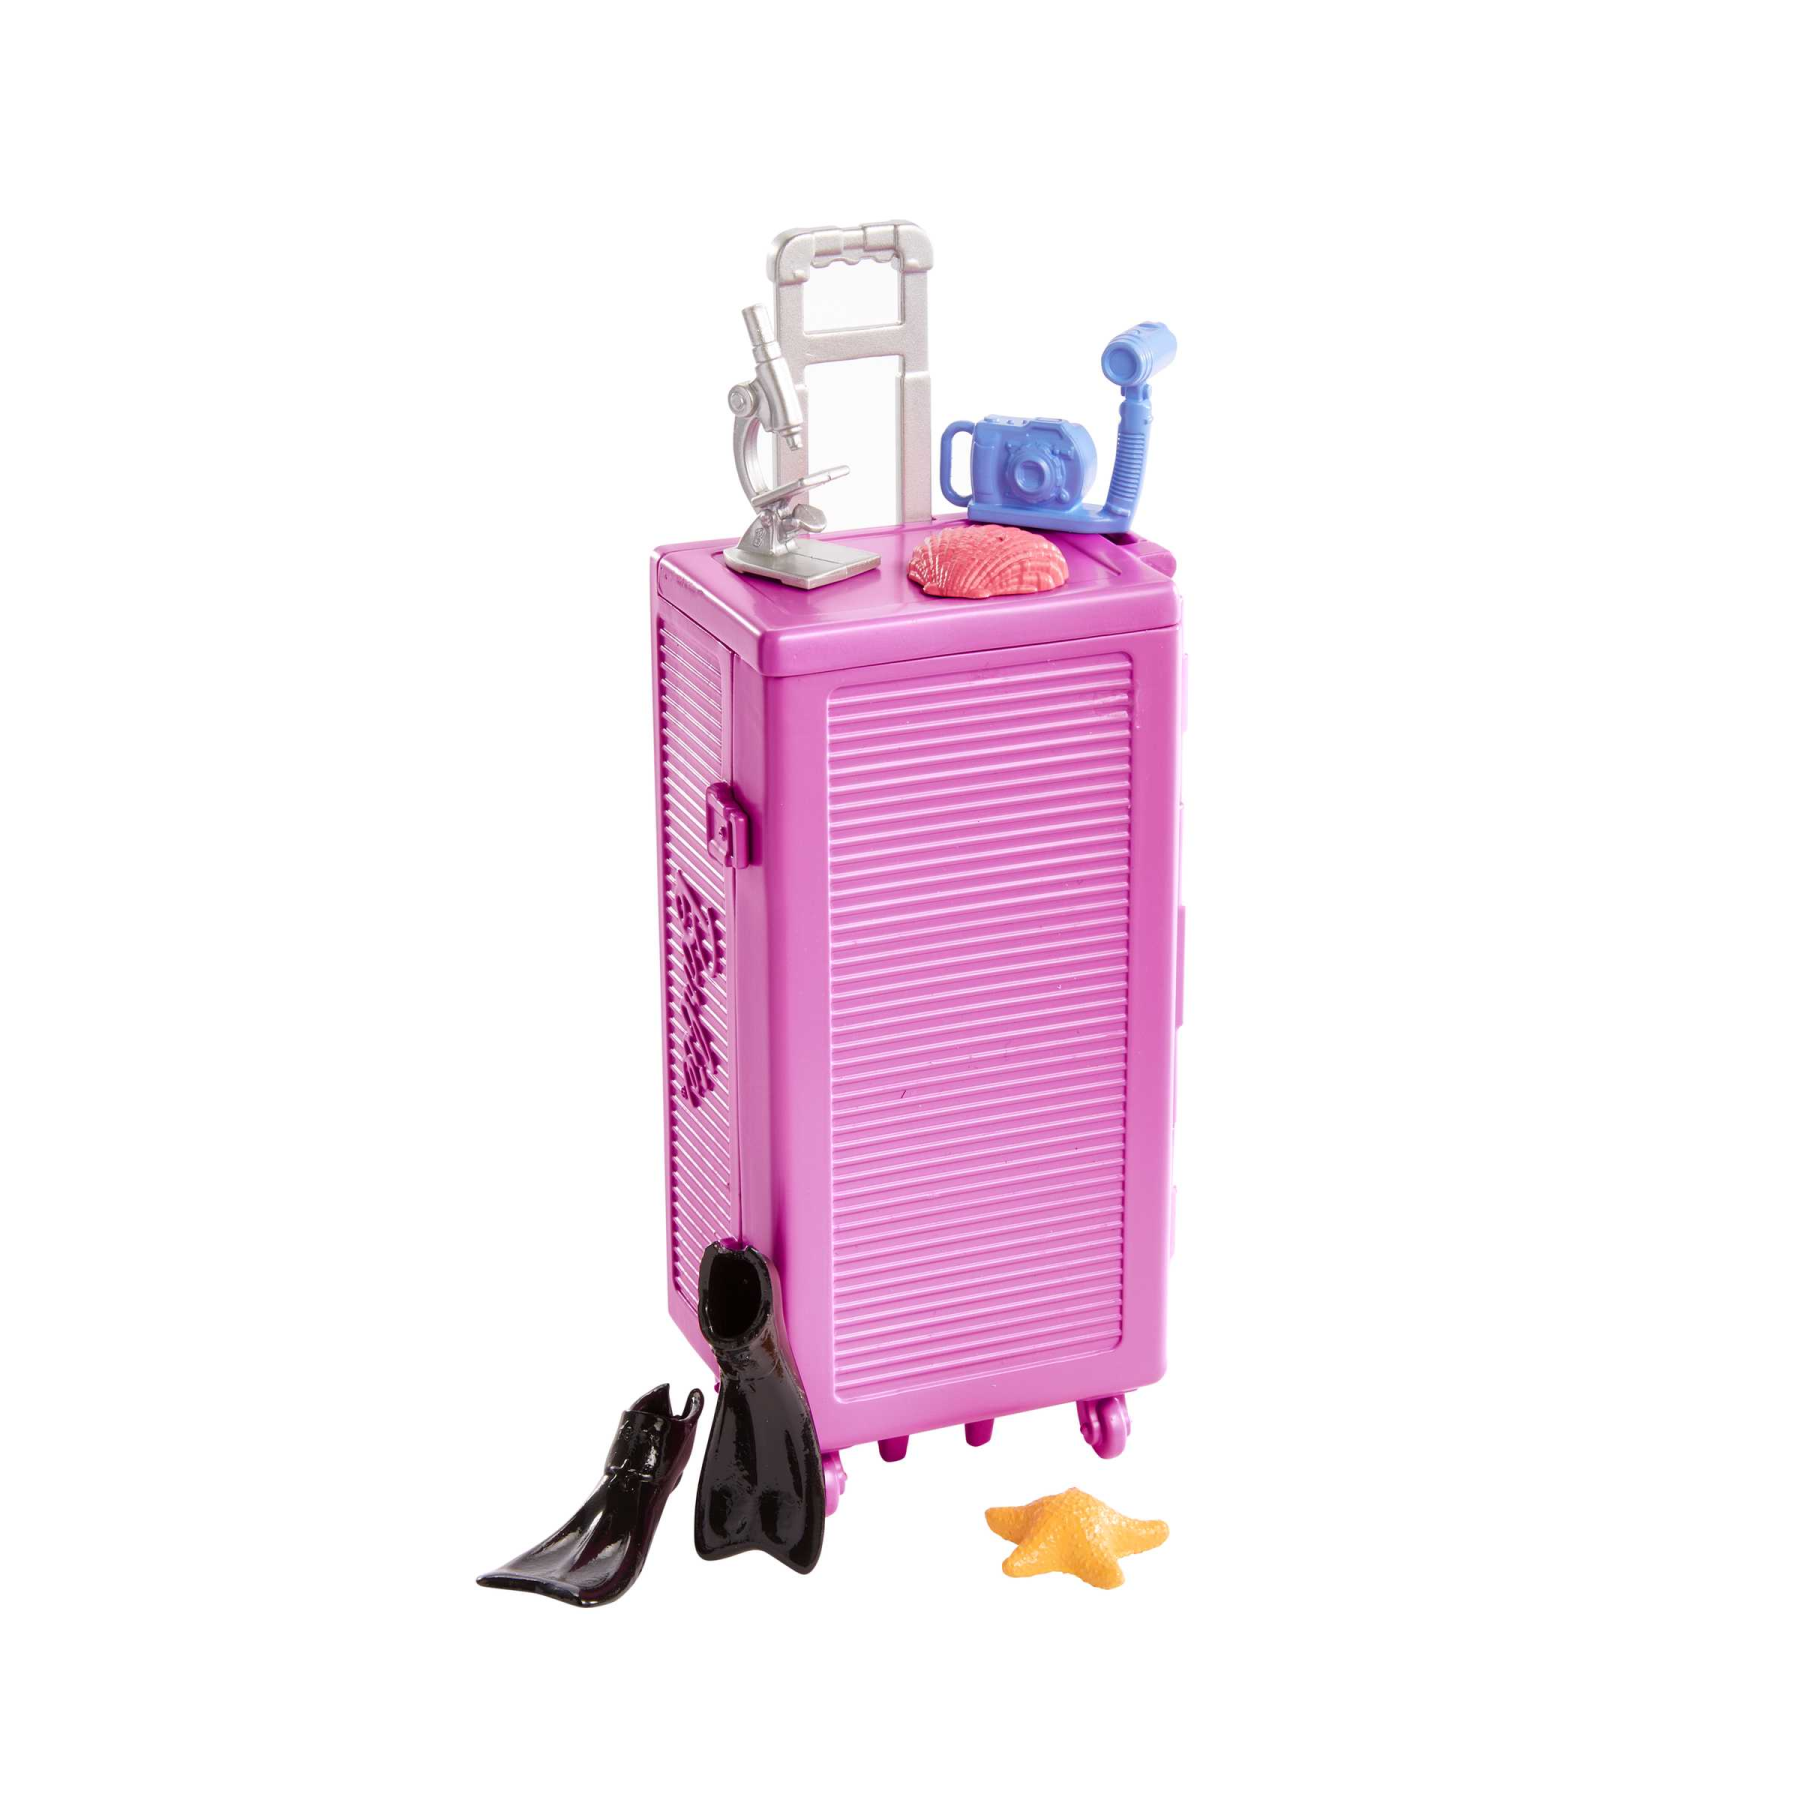 Barbie - barbie biologa marina, bambola bionda e playset con laboratorio mobile e trolley, 10+ accessori, giocattolo per bambini, 3+ anni, hmh26 - Barbie